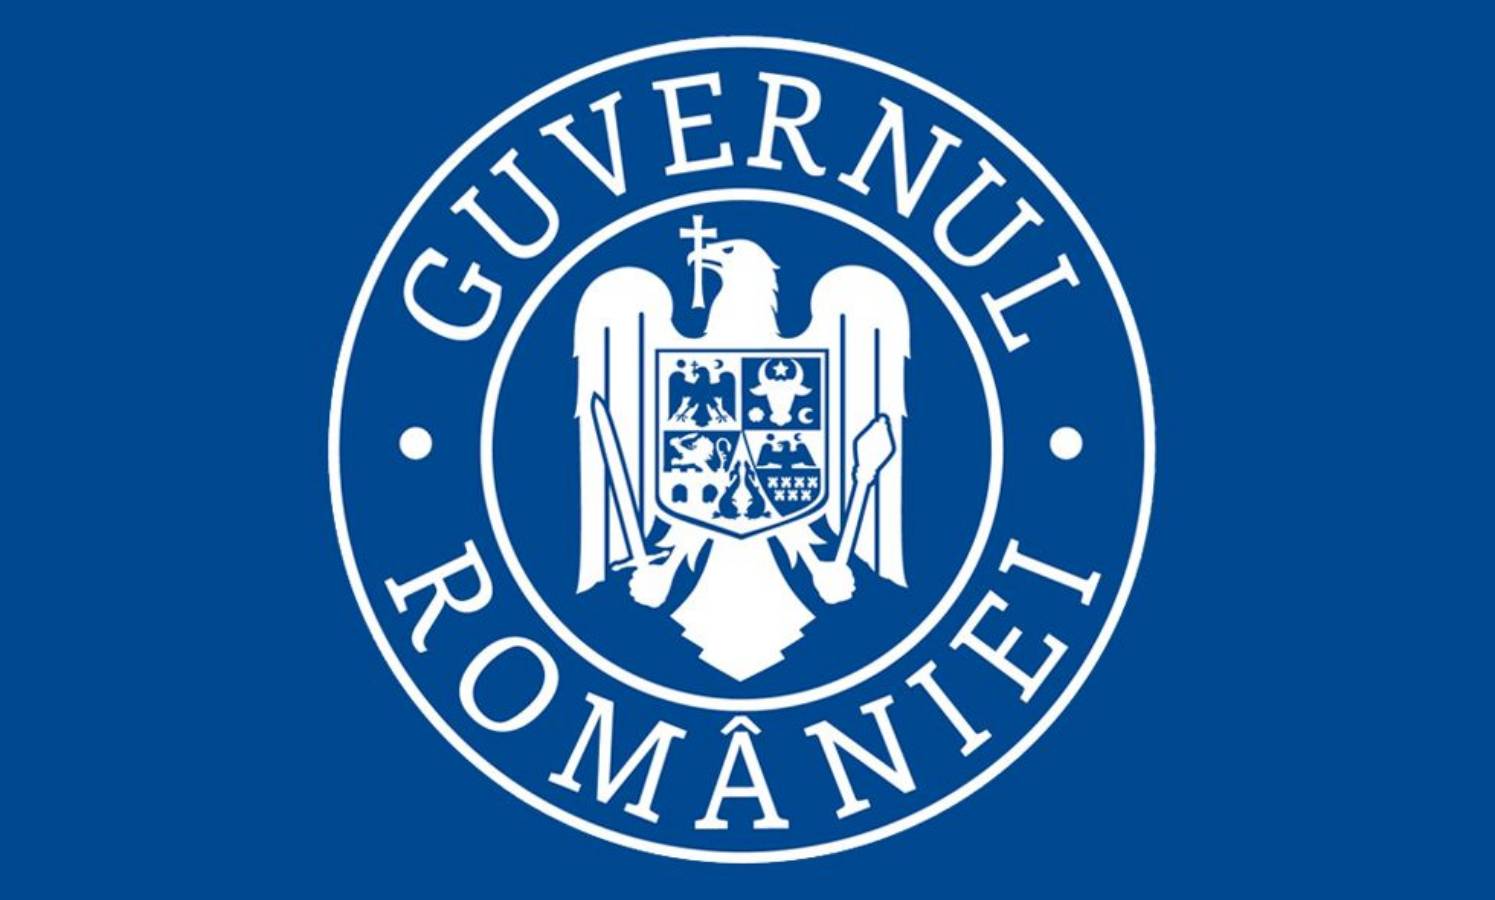 De regering van Roemenië heeft verstopte gebieden